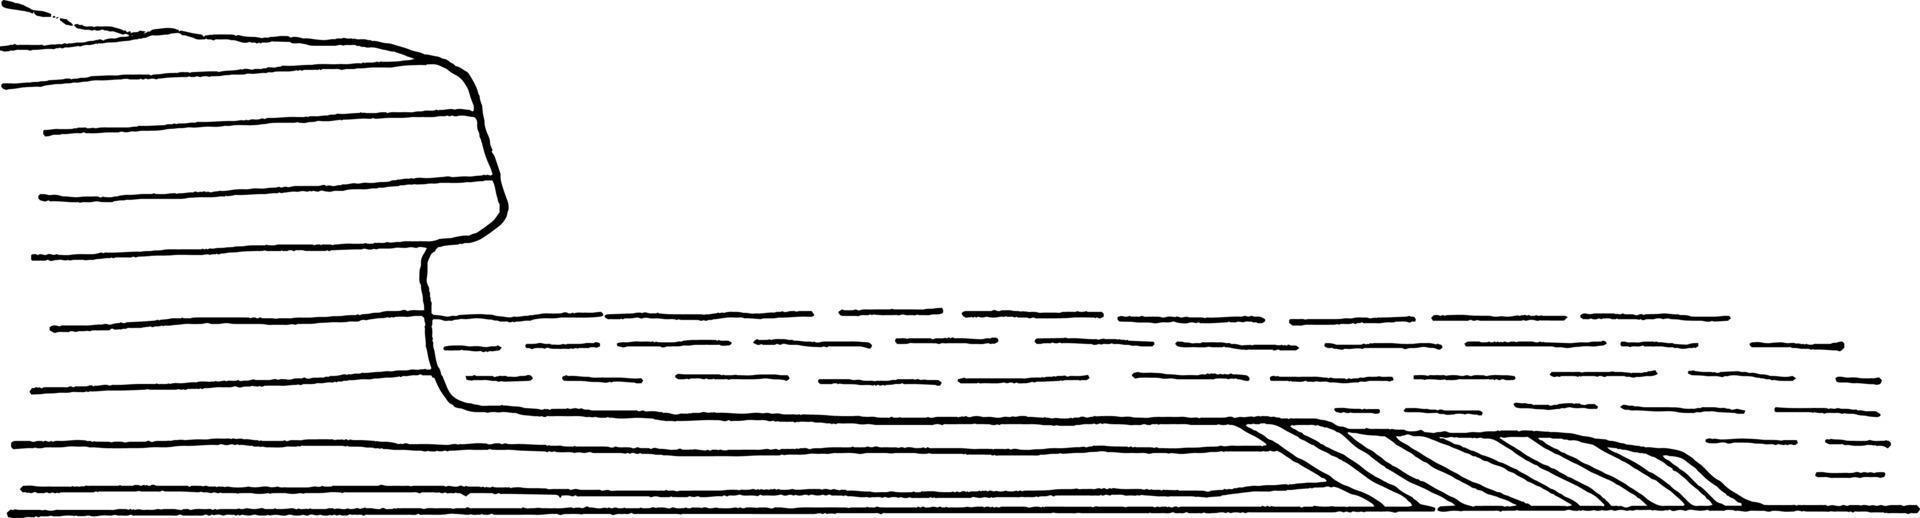 terrasse découpée en vague, illustration vintage vecteur